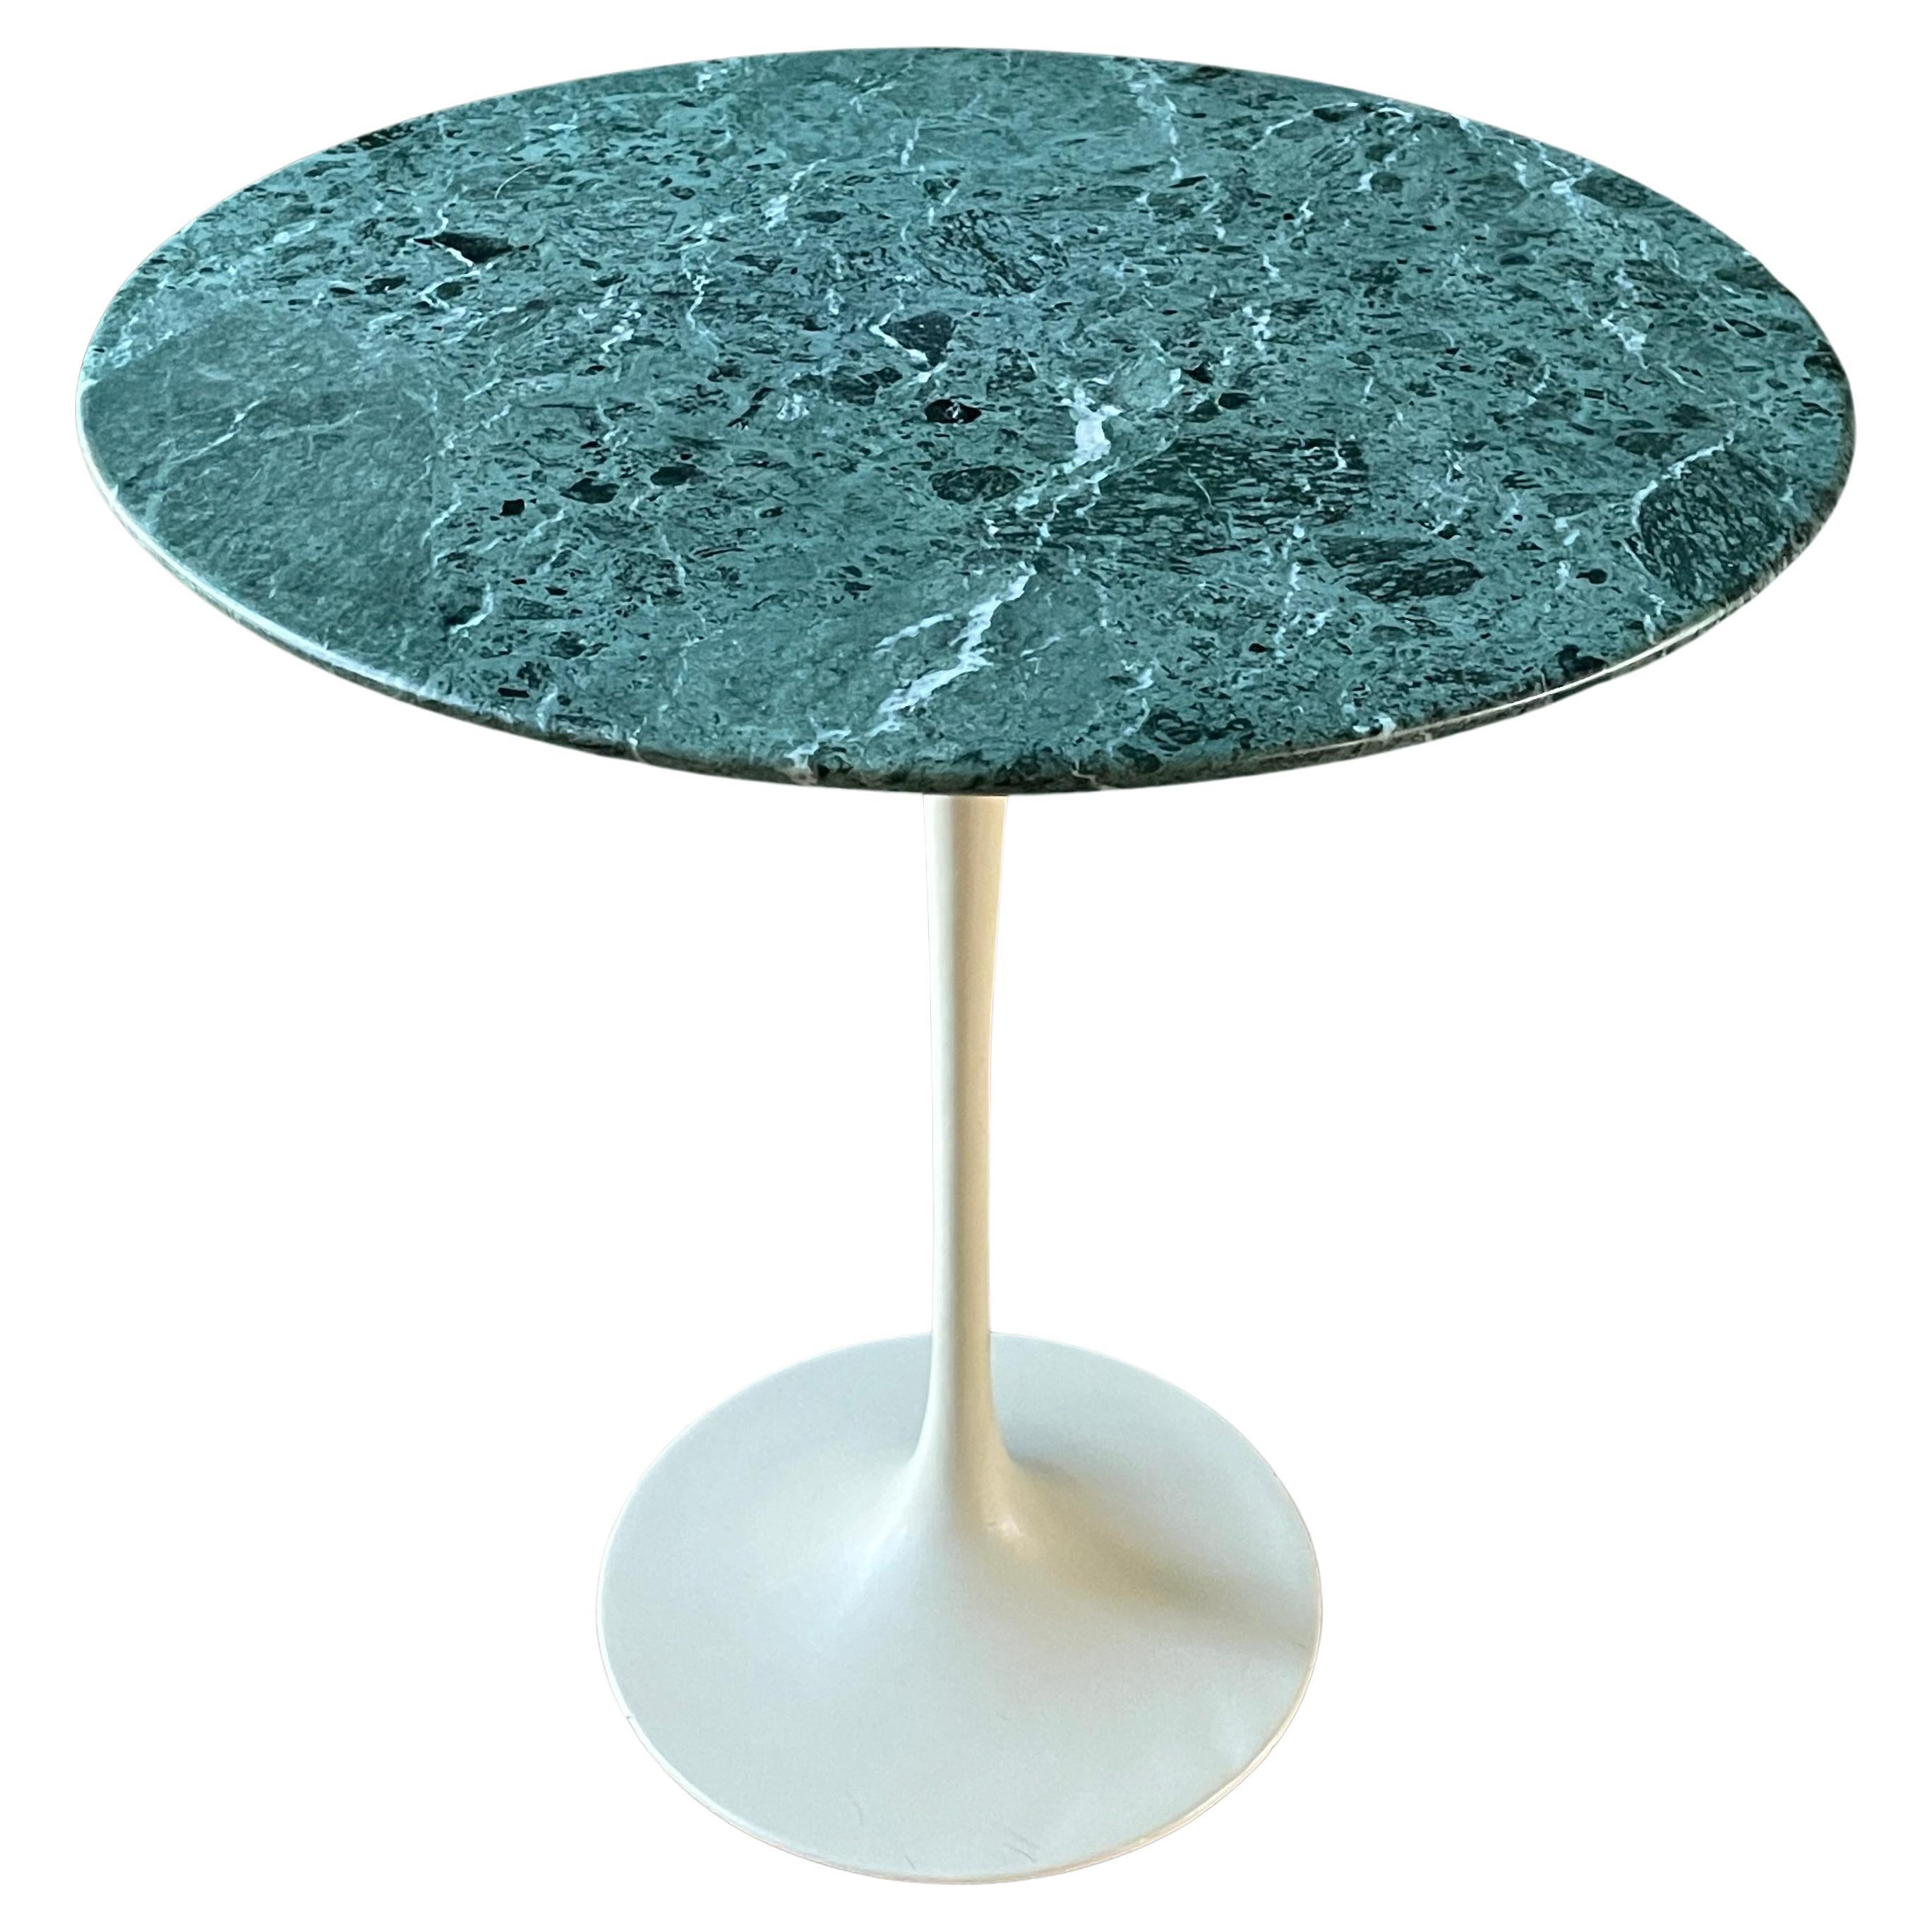 Knoll Green Verdi Alpi Marble Table Saarinen 1960s Vintage Mid-Century MCM Mod